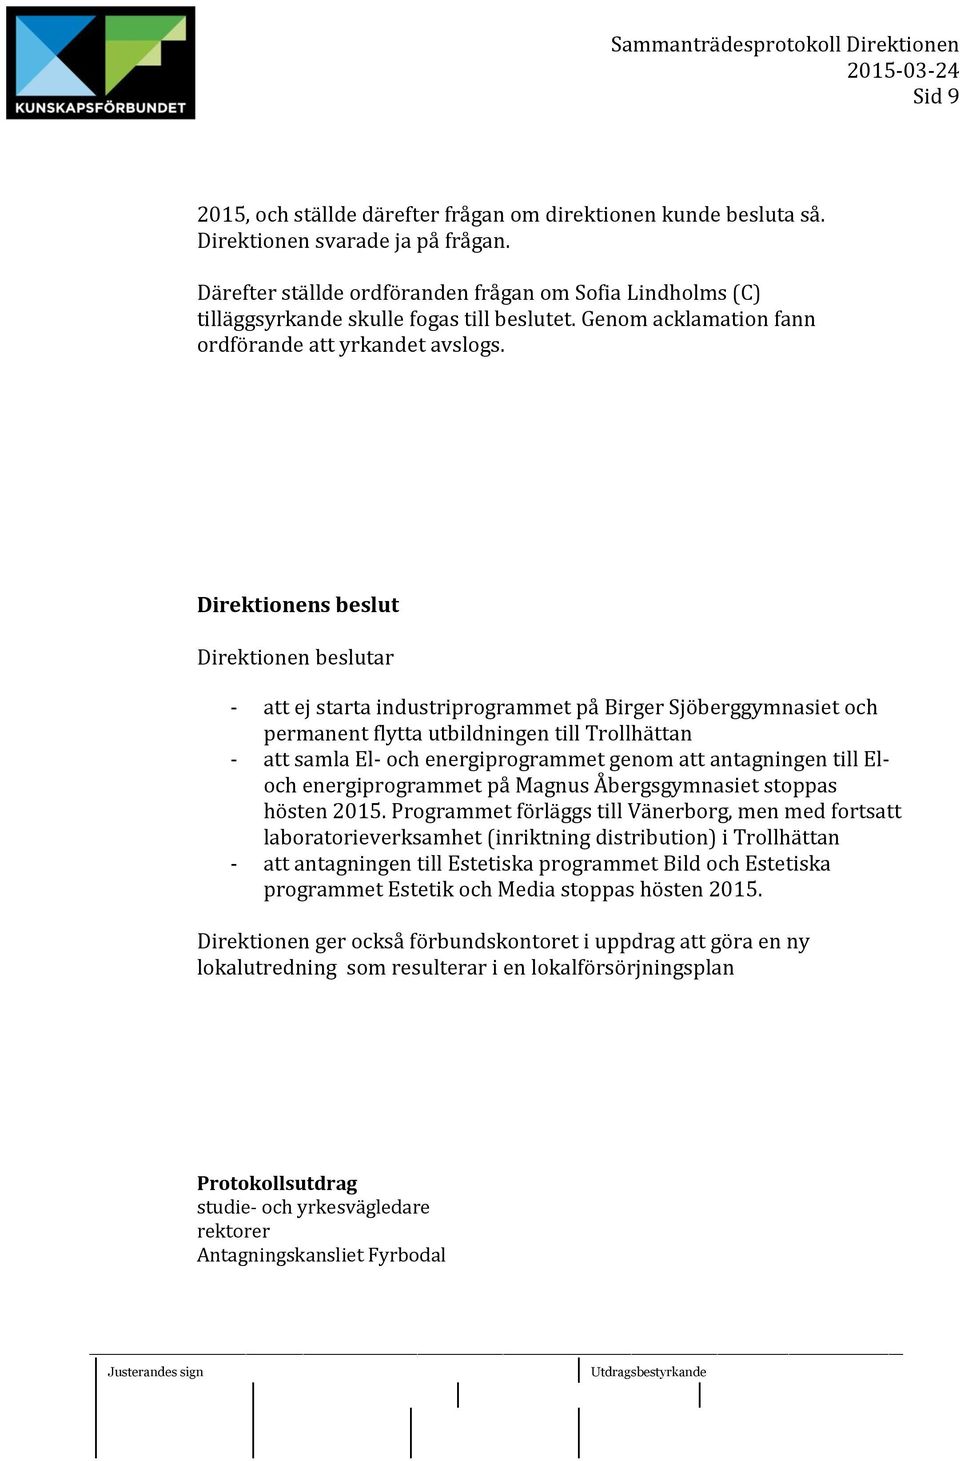 Direktionens beslut Direktionen beslutar - att ej starta industriprogrammet på Birger Sjöberggymnasiet och permanent flytta utbildningen till Trollhättan - att samla El- och energiprogrammet genom